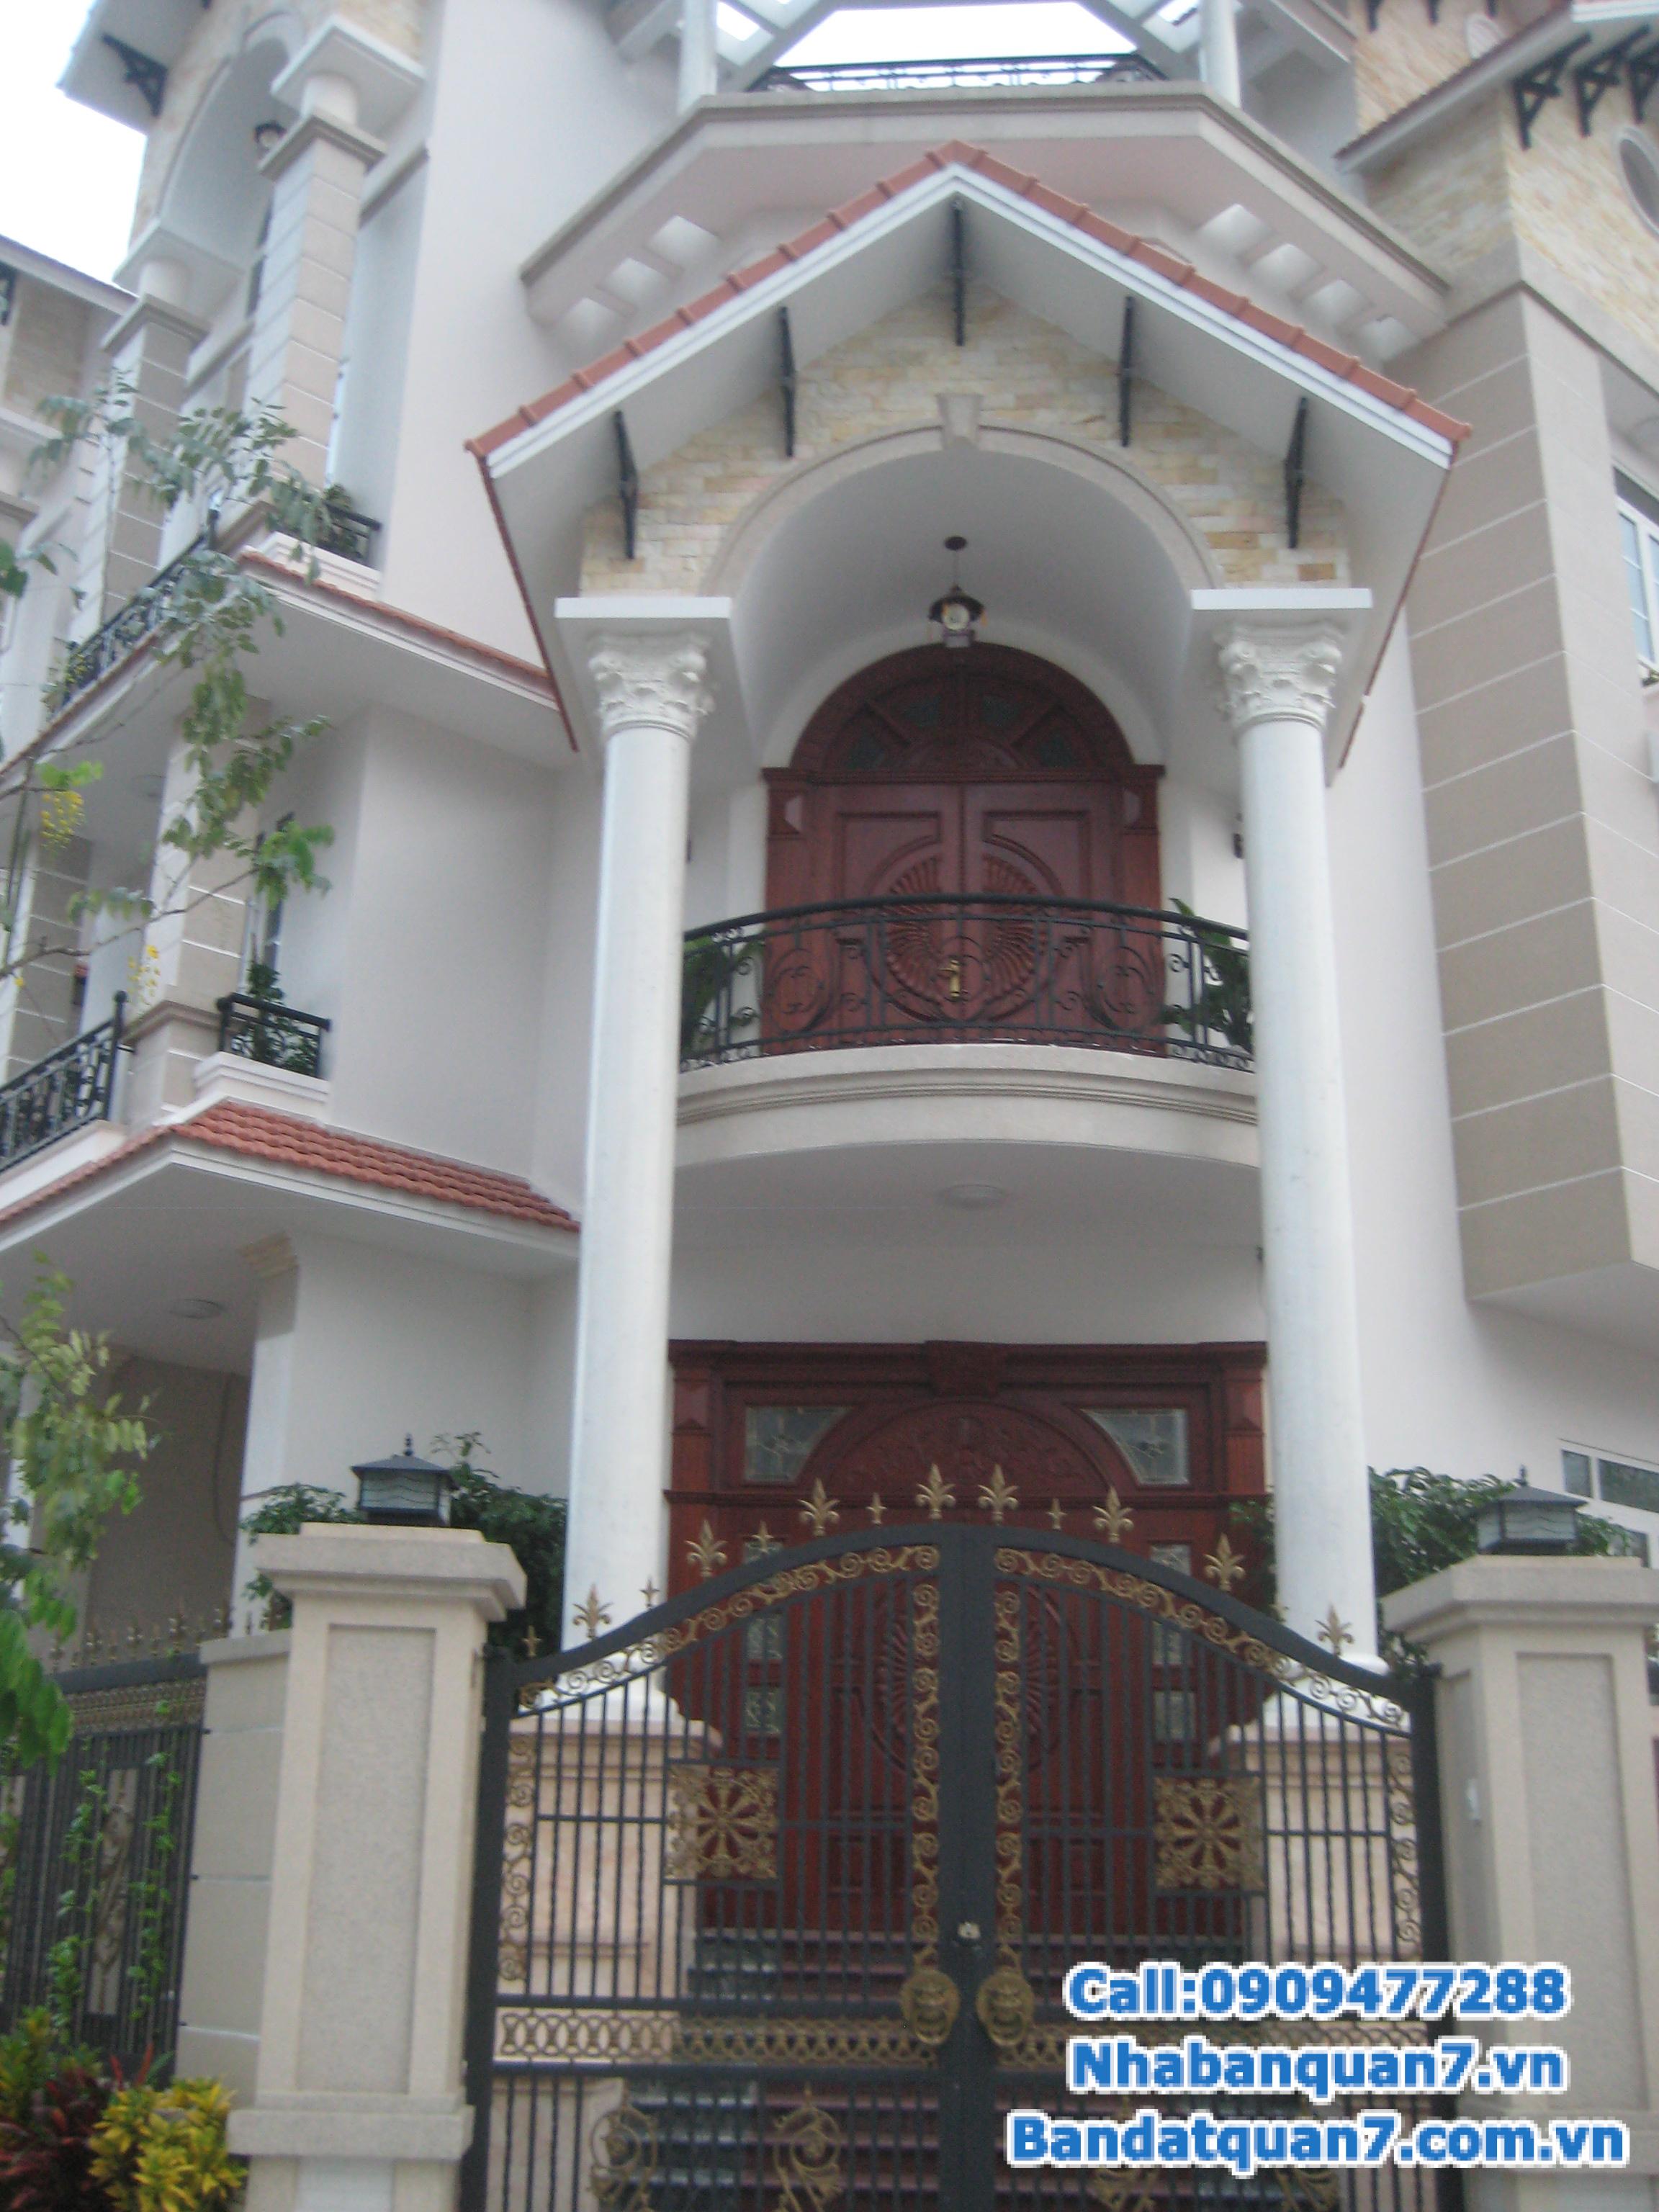 Bán 1 trong 2 căn nhà thuộc khu dân cư Him Lam Kênh Tẻ Phường Tân Hưng, Quận 7 vị trí đẹp